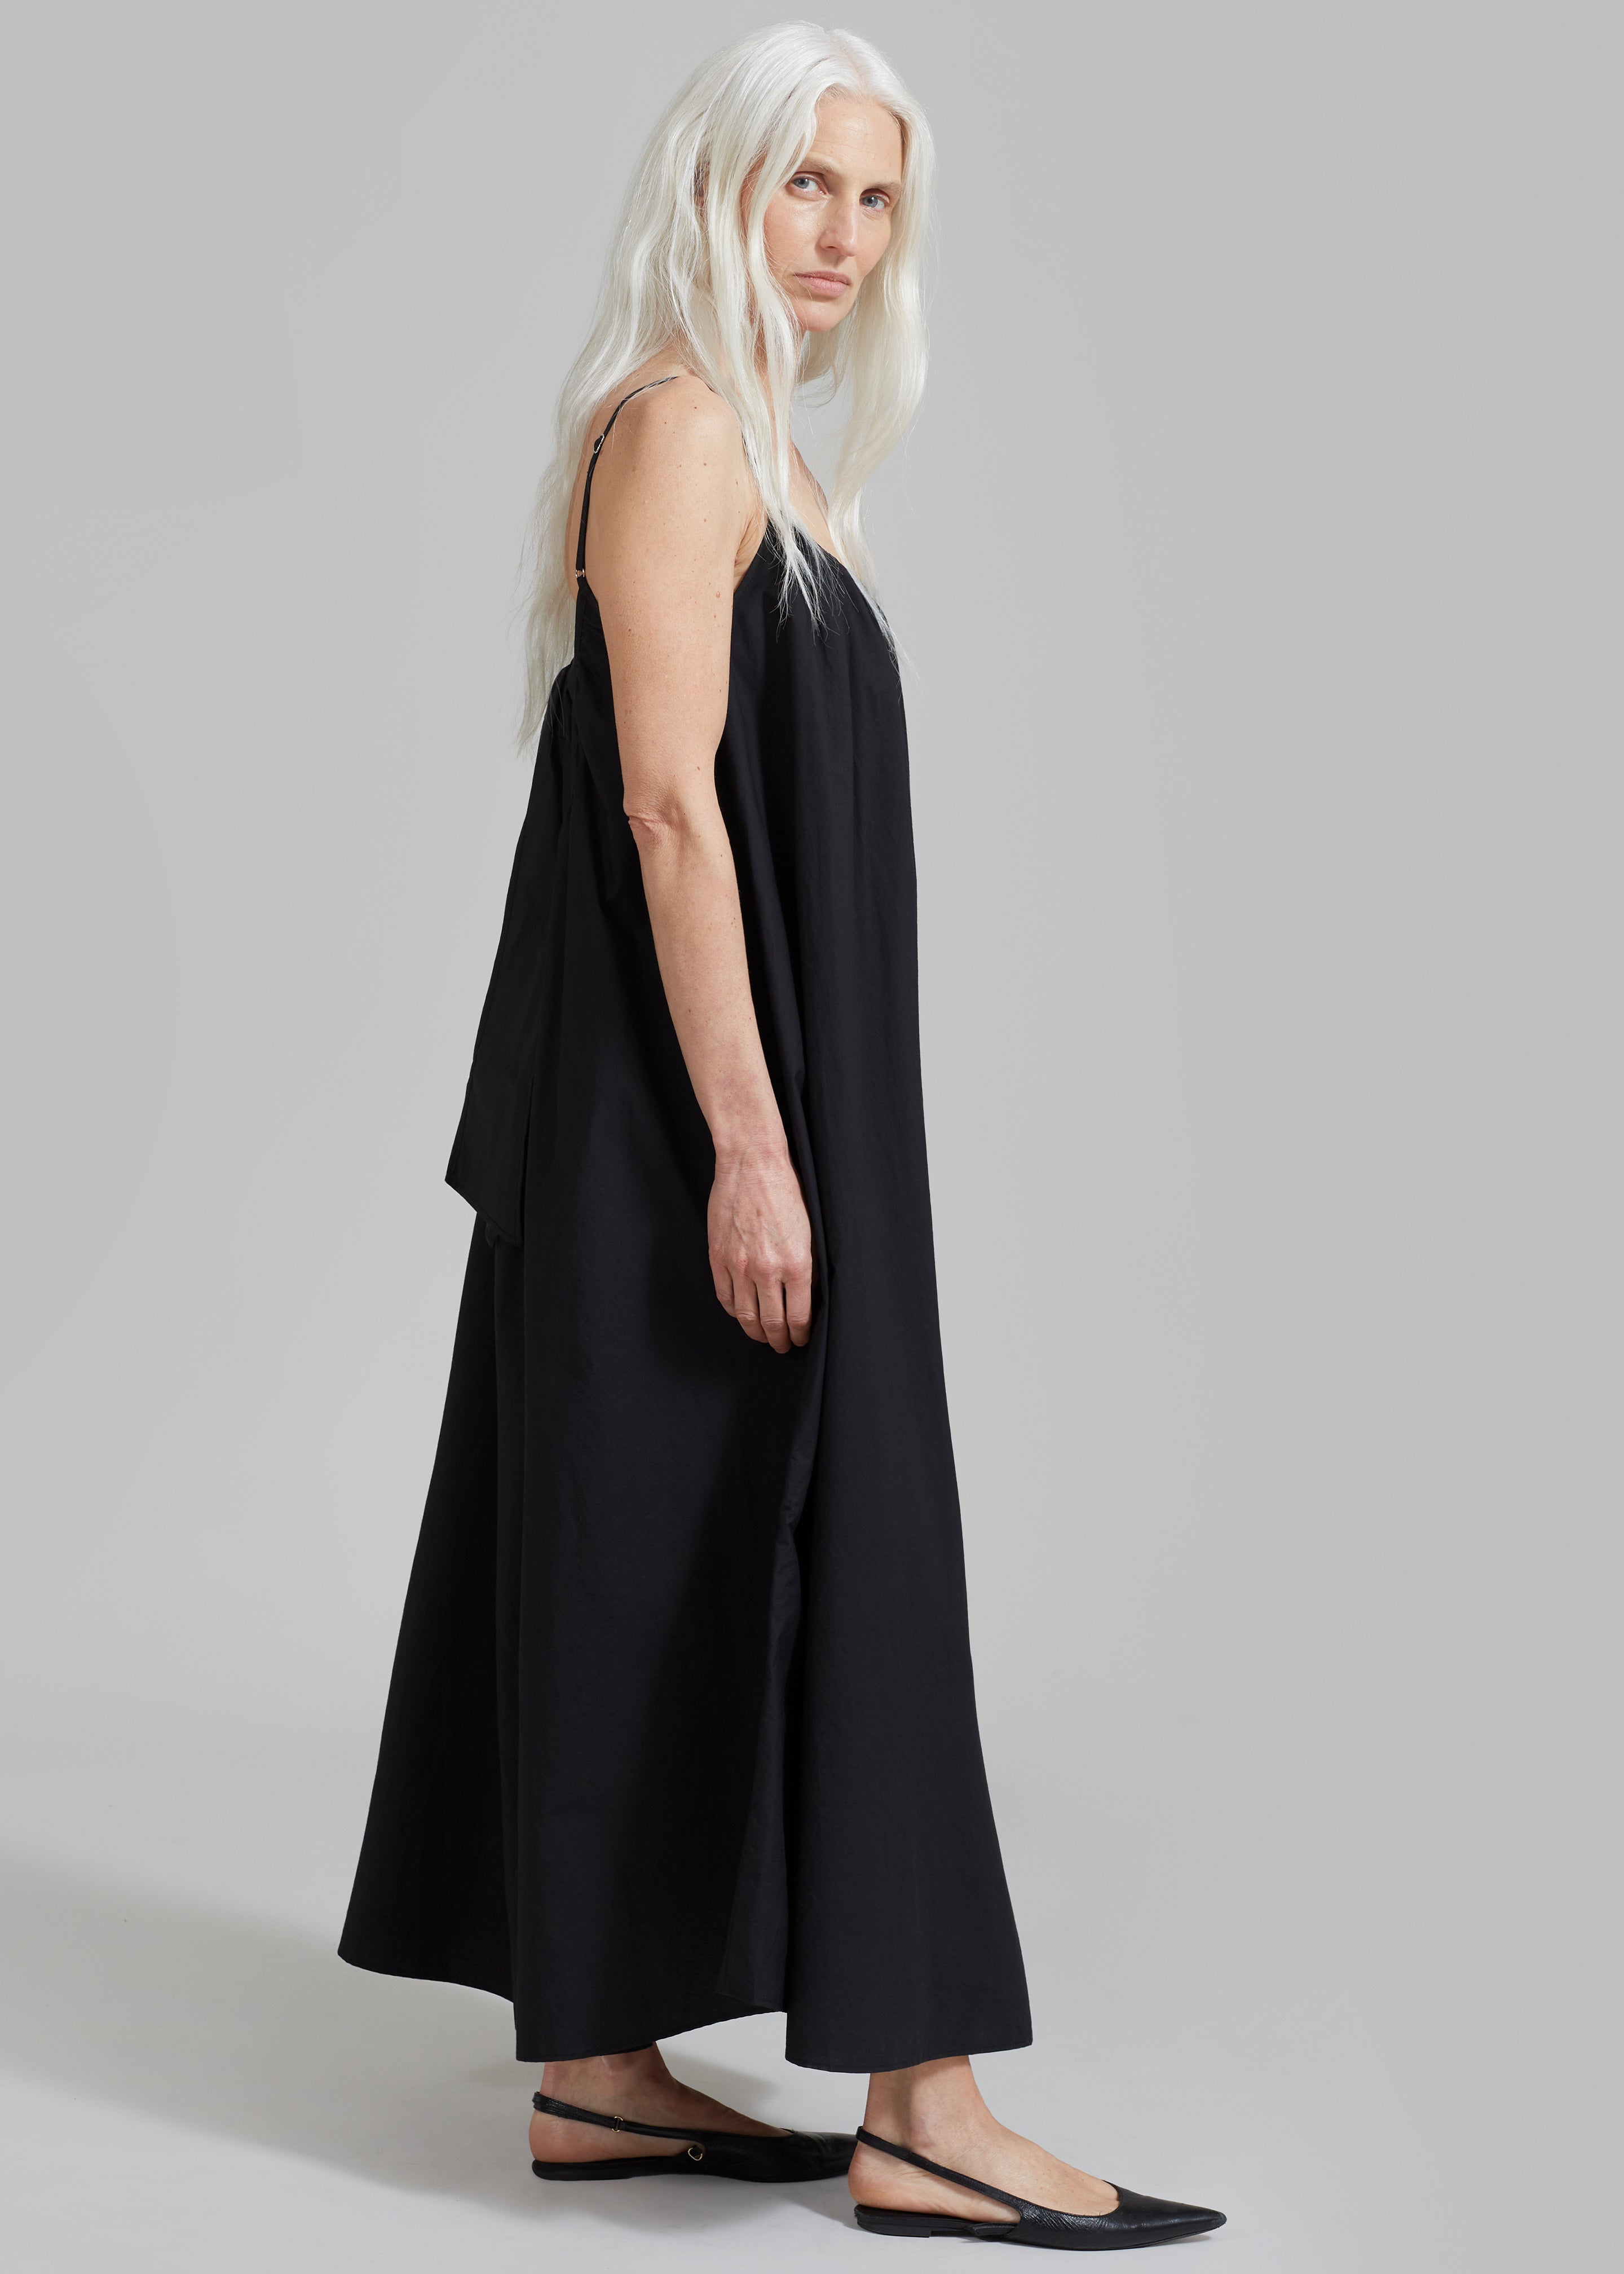 Isabel Maxi Dress - Black - 4